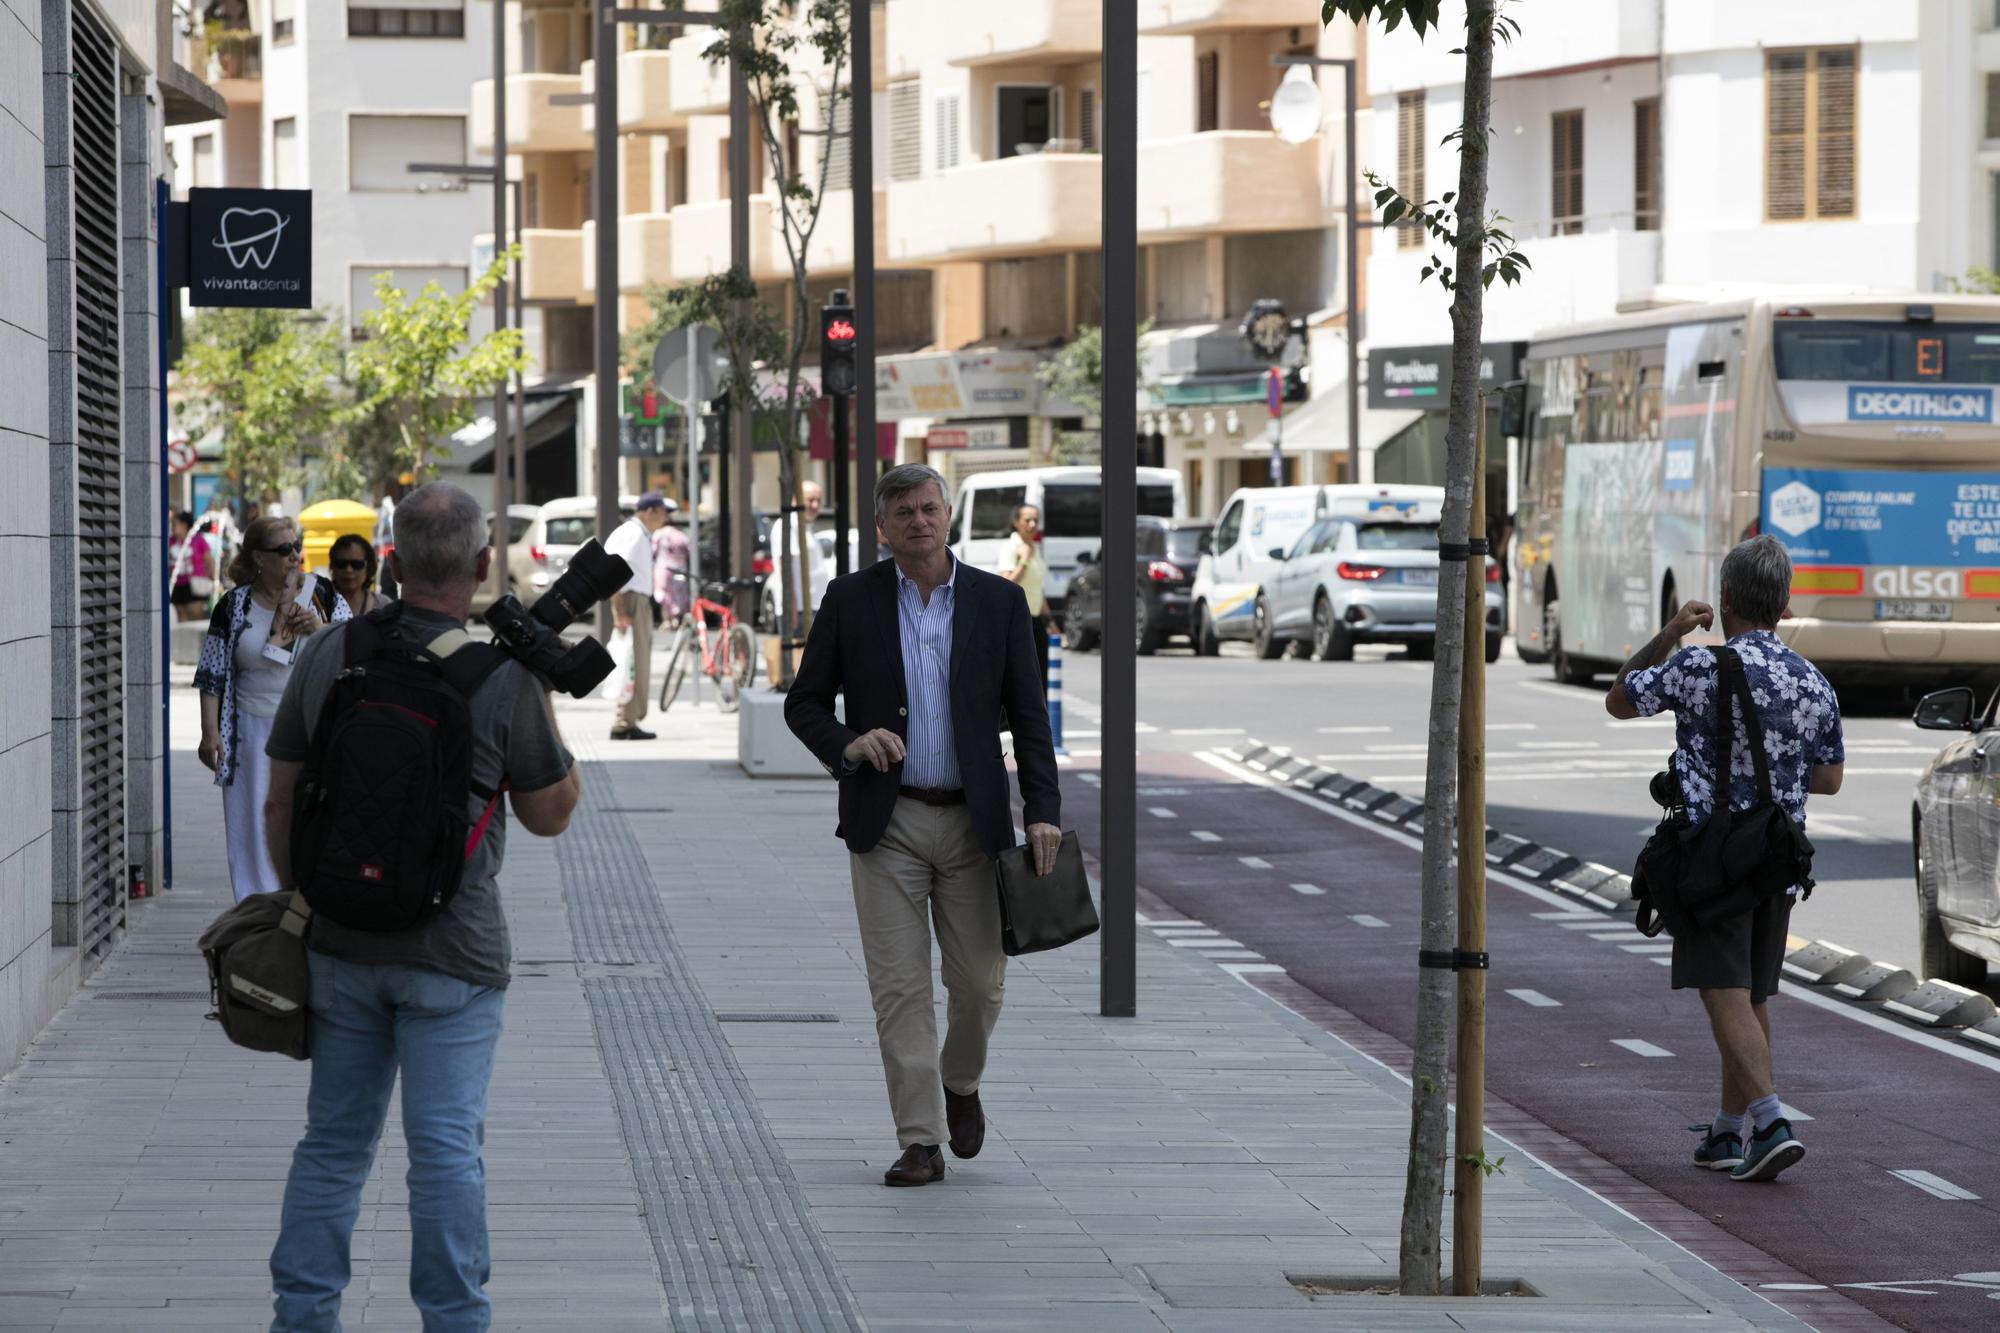 Galería de imágenes de la llegada de los detenidos por la trama de corrupción urbanística de Sant Josep al juzgado de Ibiza